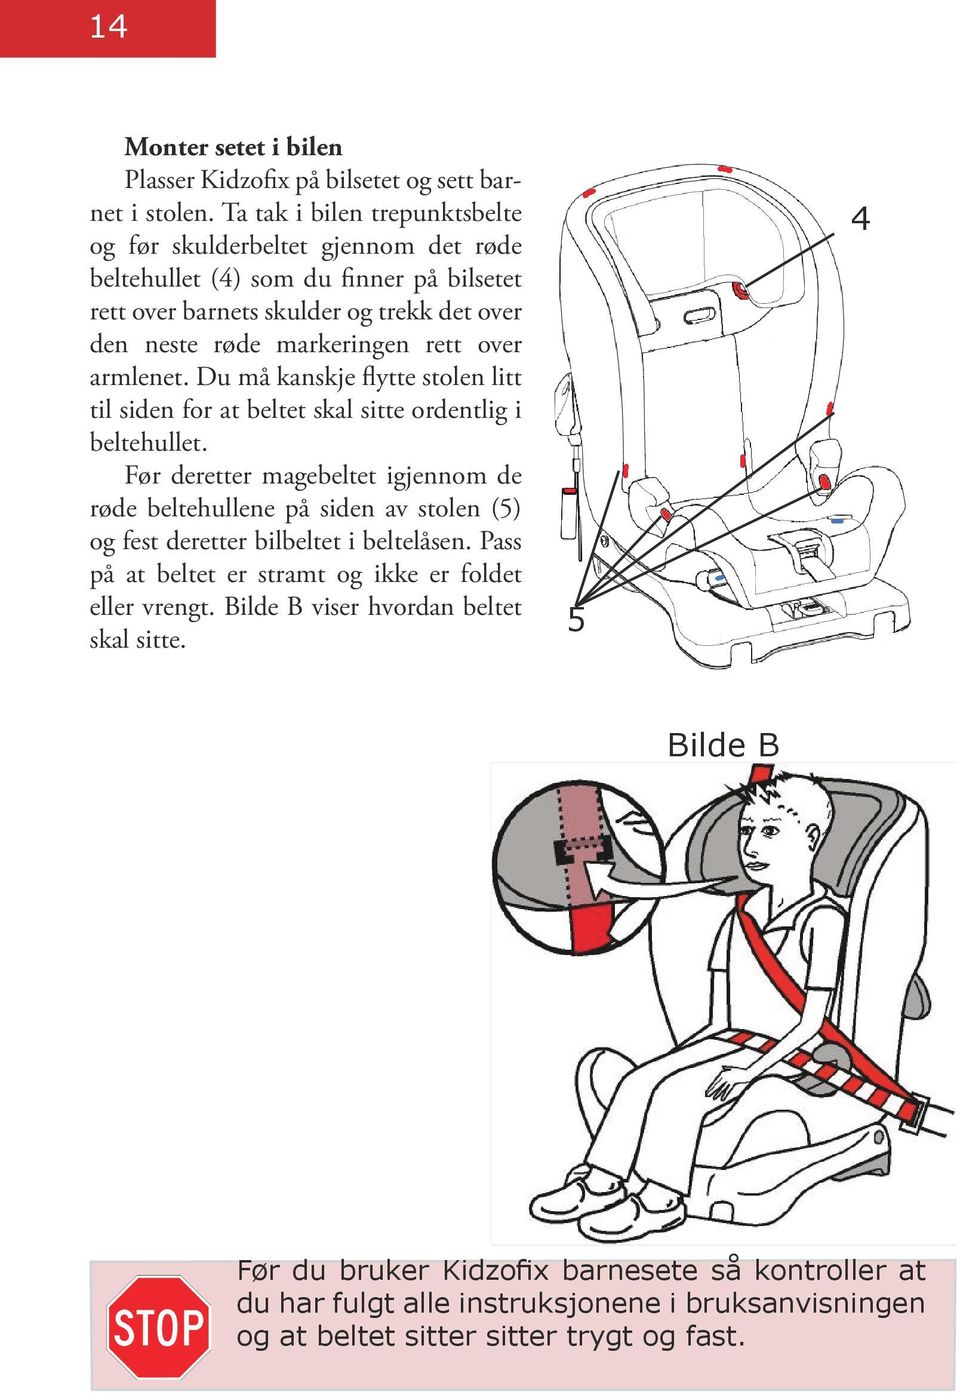 over armlenet. Du må kanskje flytte stolen litt til siden for at beltet skal sitte ordentlig i beltehullet.